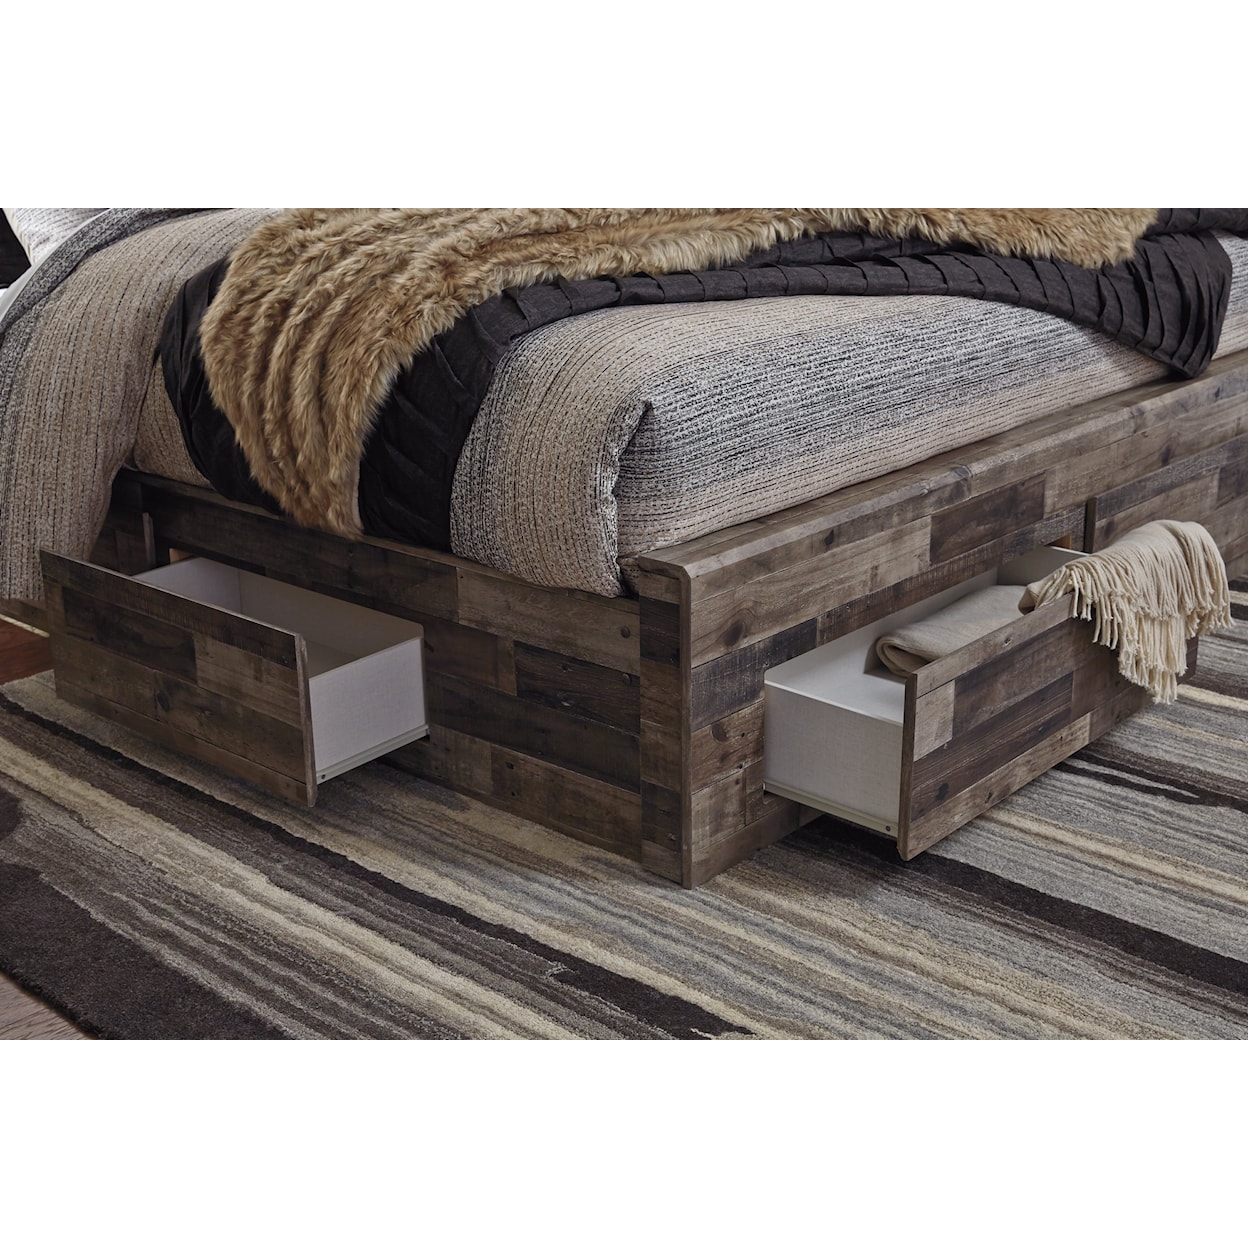 Benchcraft Derekson Queen Panel Bed with 4 Storage Drawers